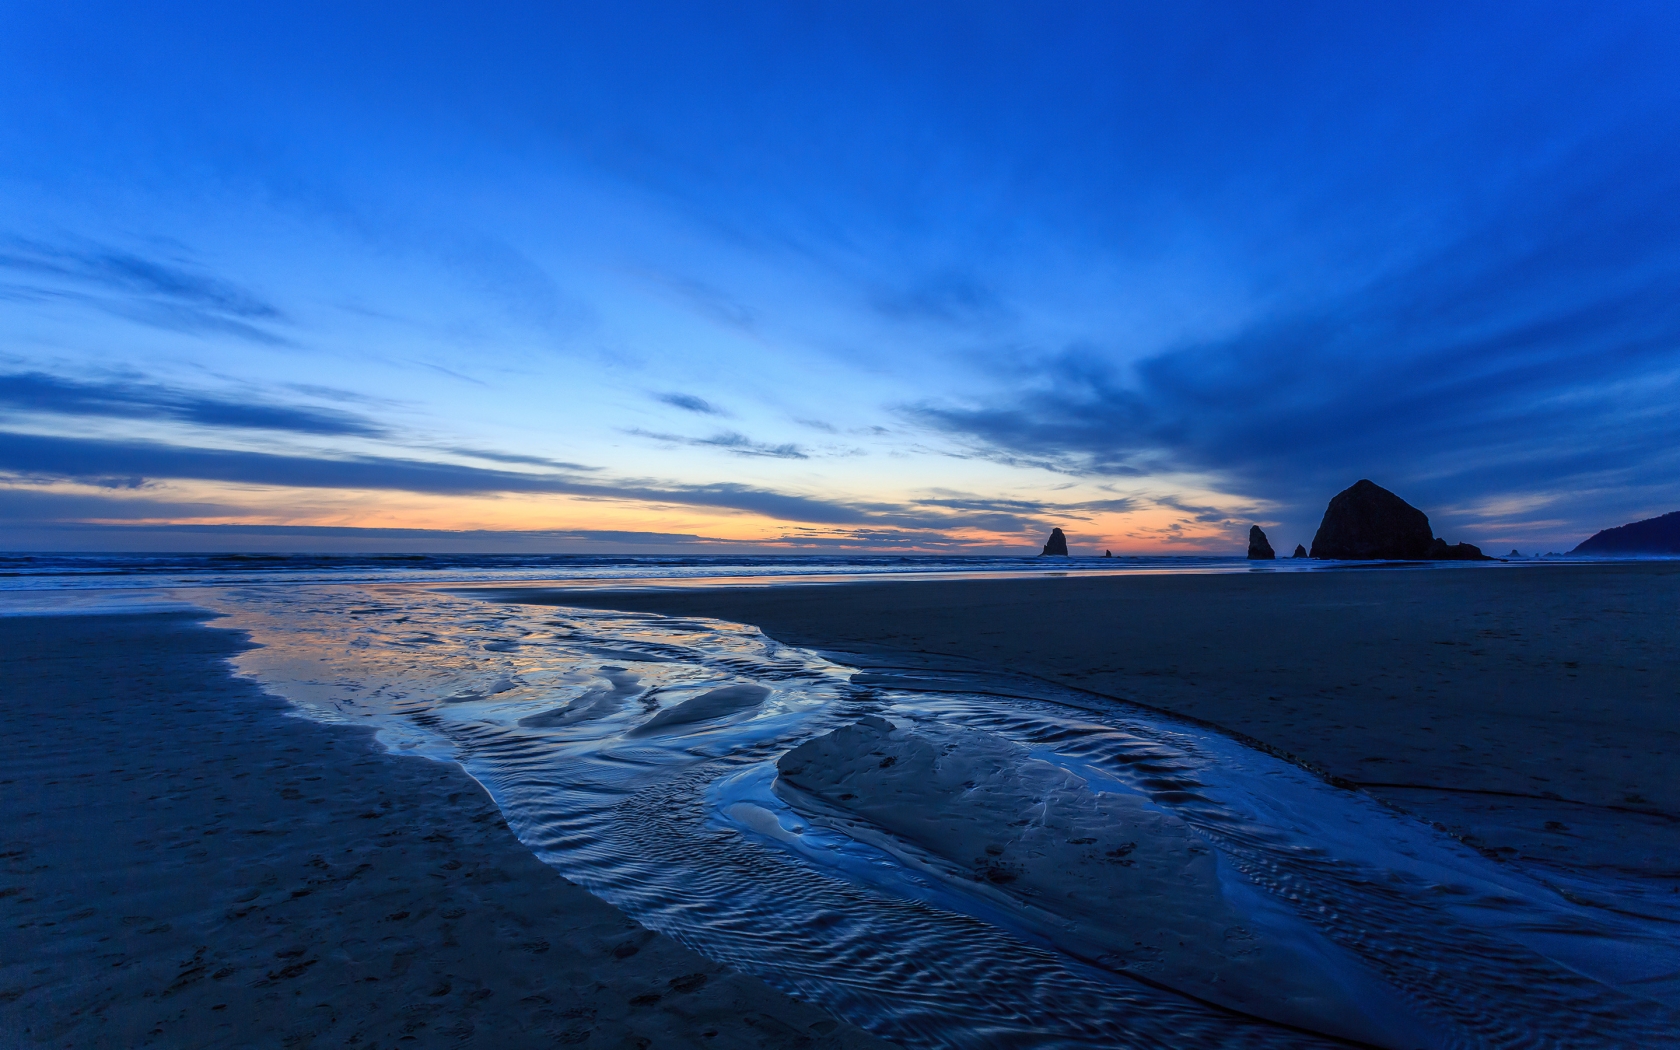 Sunset Oregon Beach for 1680 x 1050 widescreen resolution